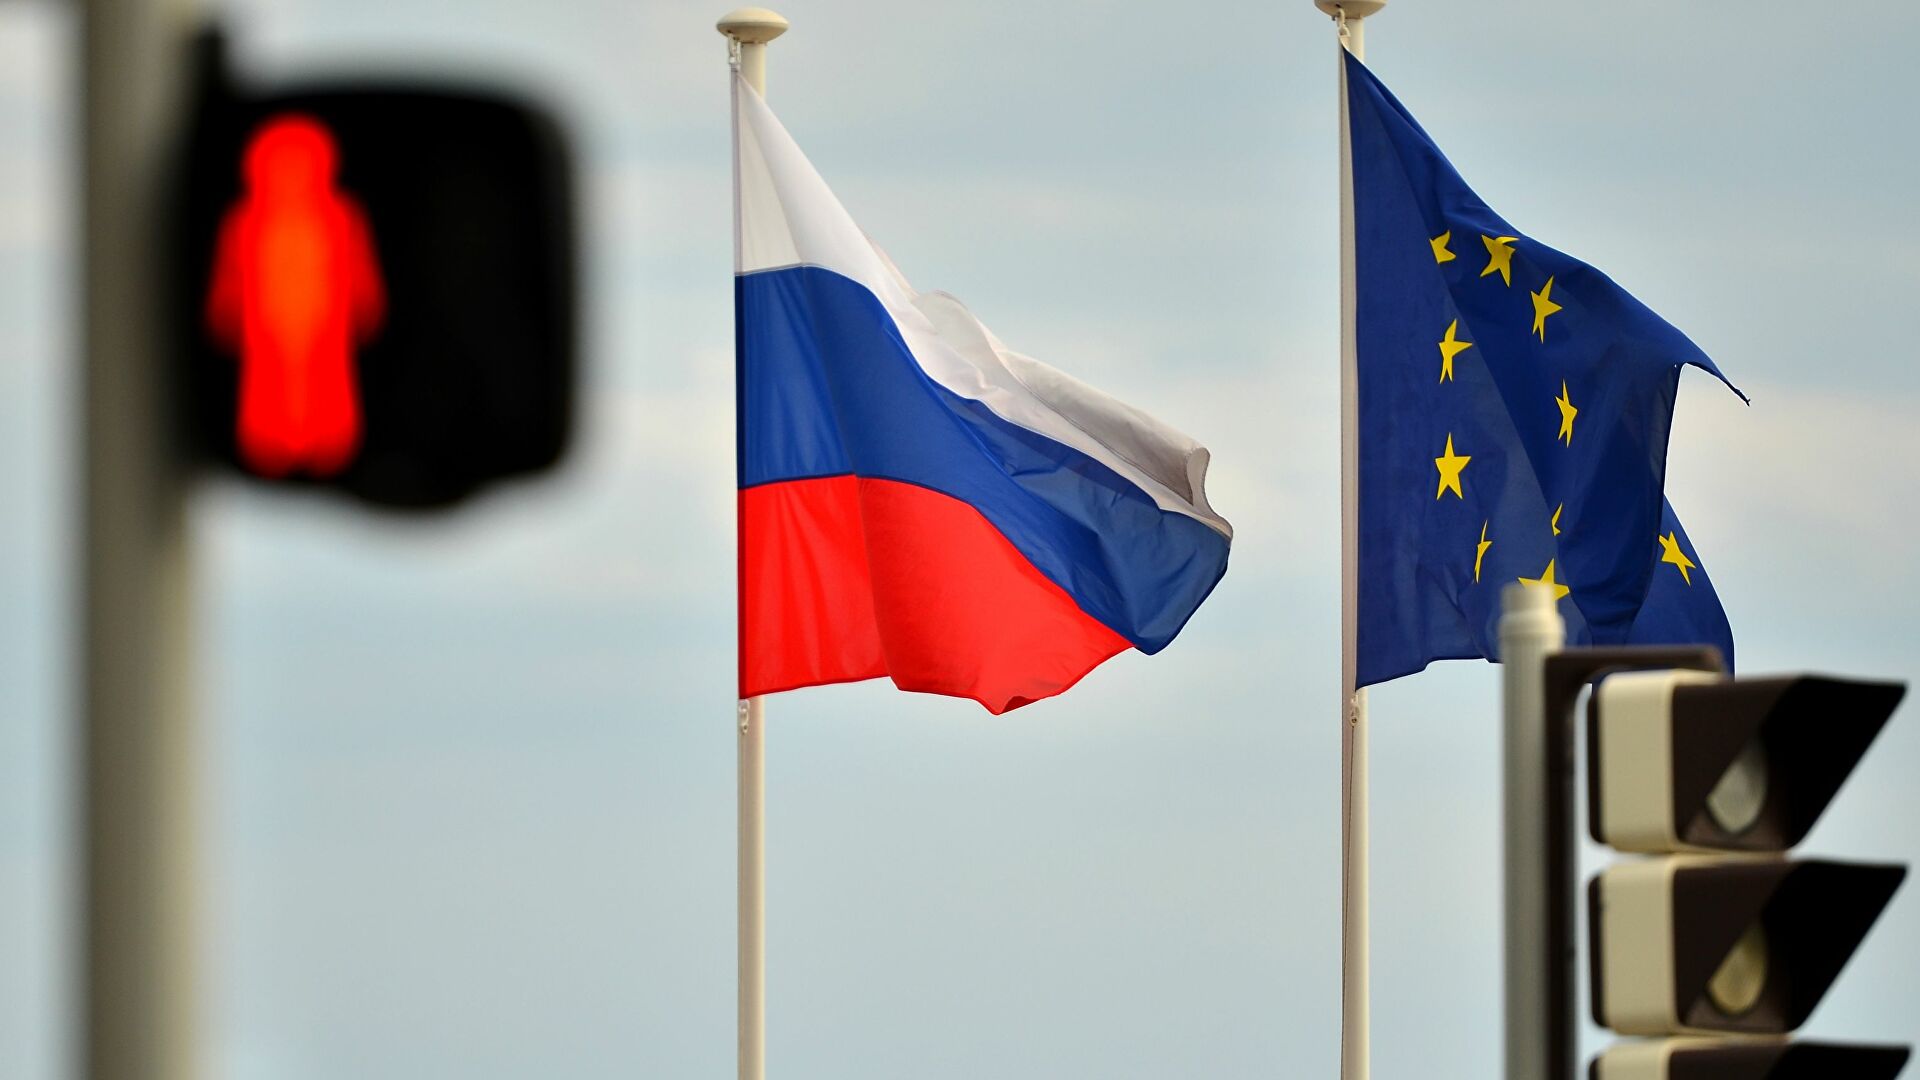 ЕС полностью остановил упрощённый визовый режим с Россией